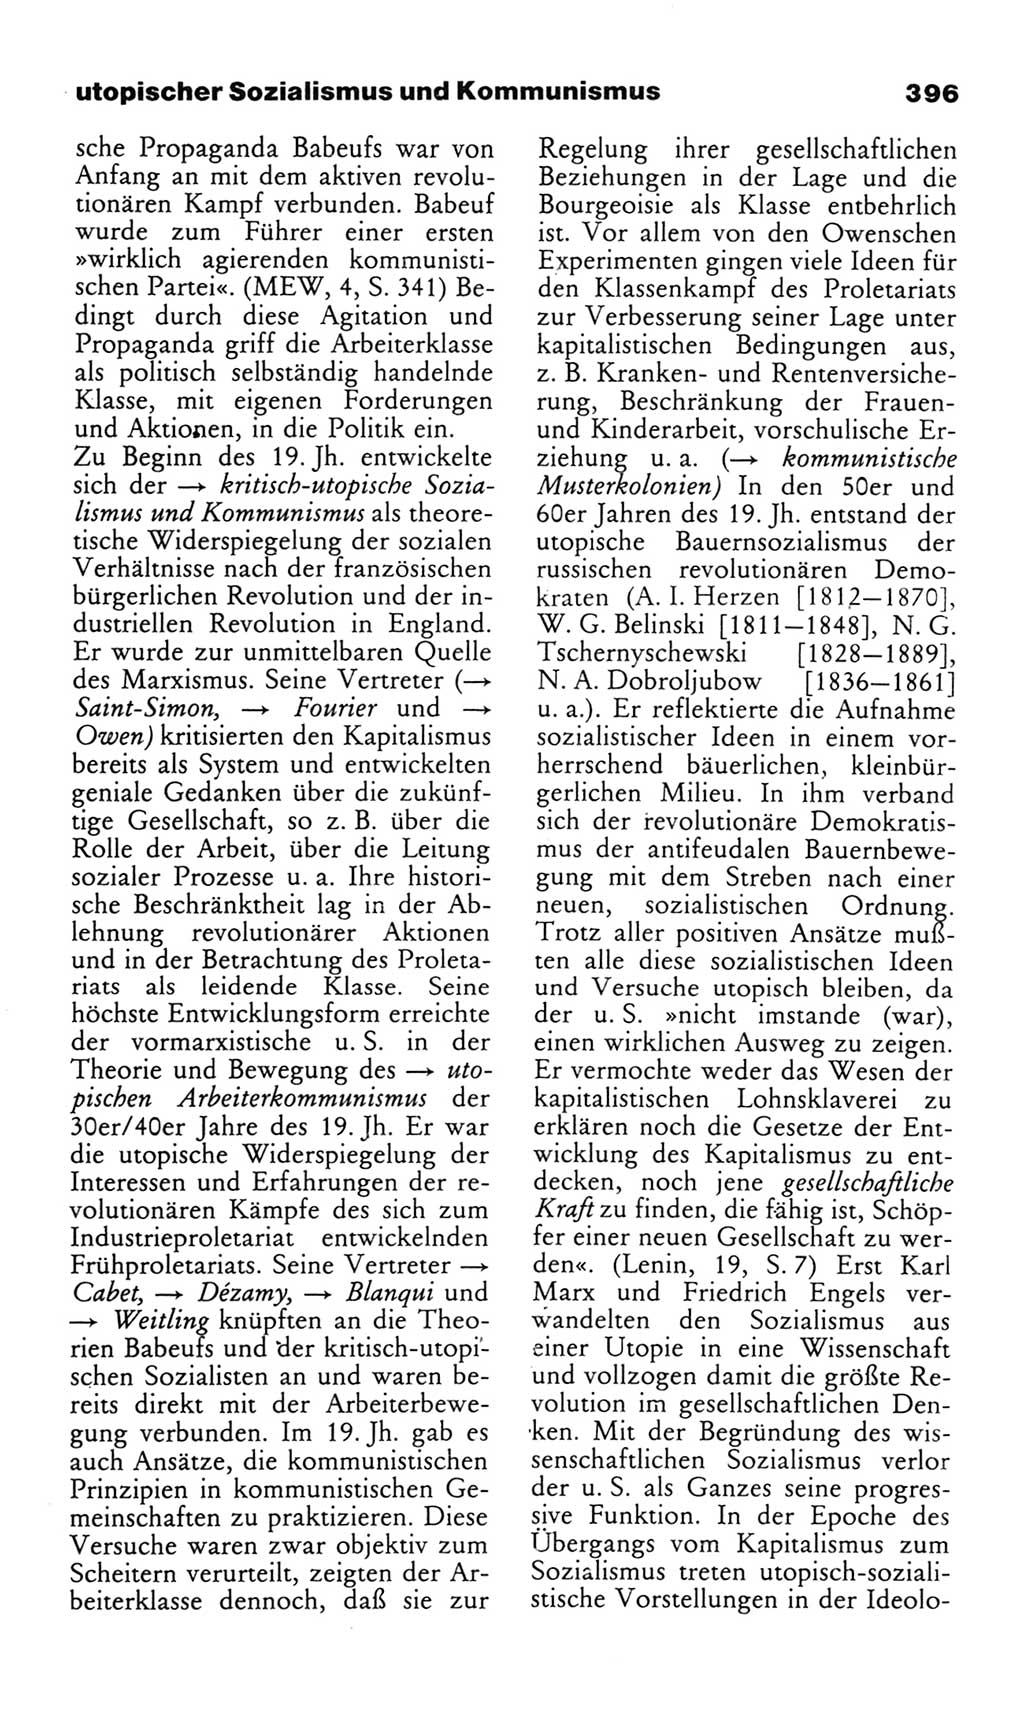 Wörterbuch des wissenschaftlichen Kommunismus [Deutsche Demokratische Republik (DDR)] 1982, Seite 396 (Wb. wiss. Komm. DDR 1982, S. 396)